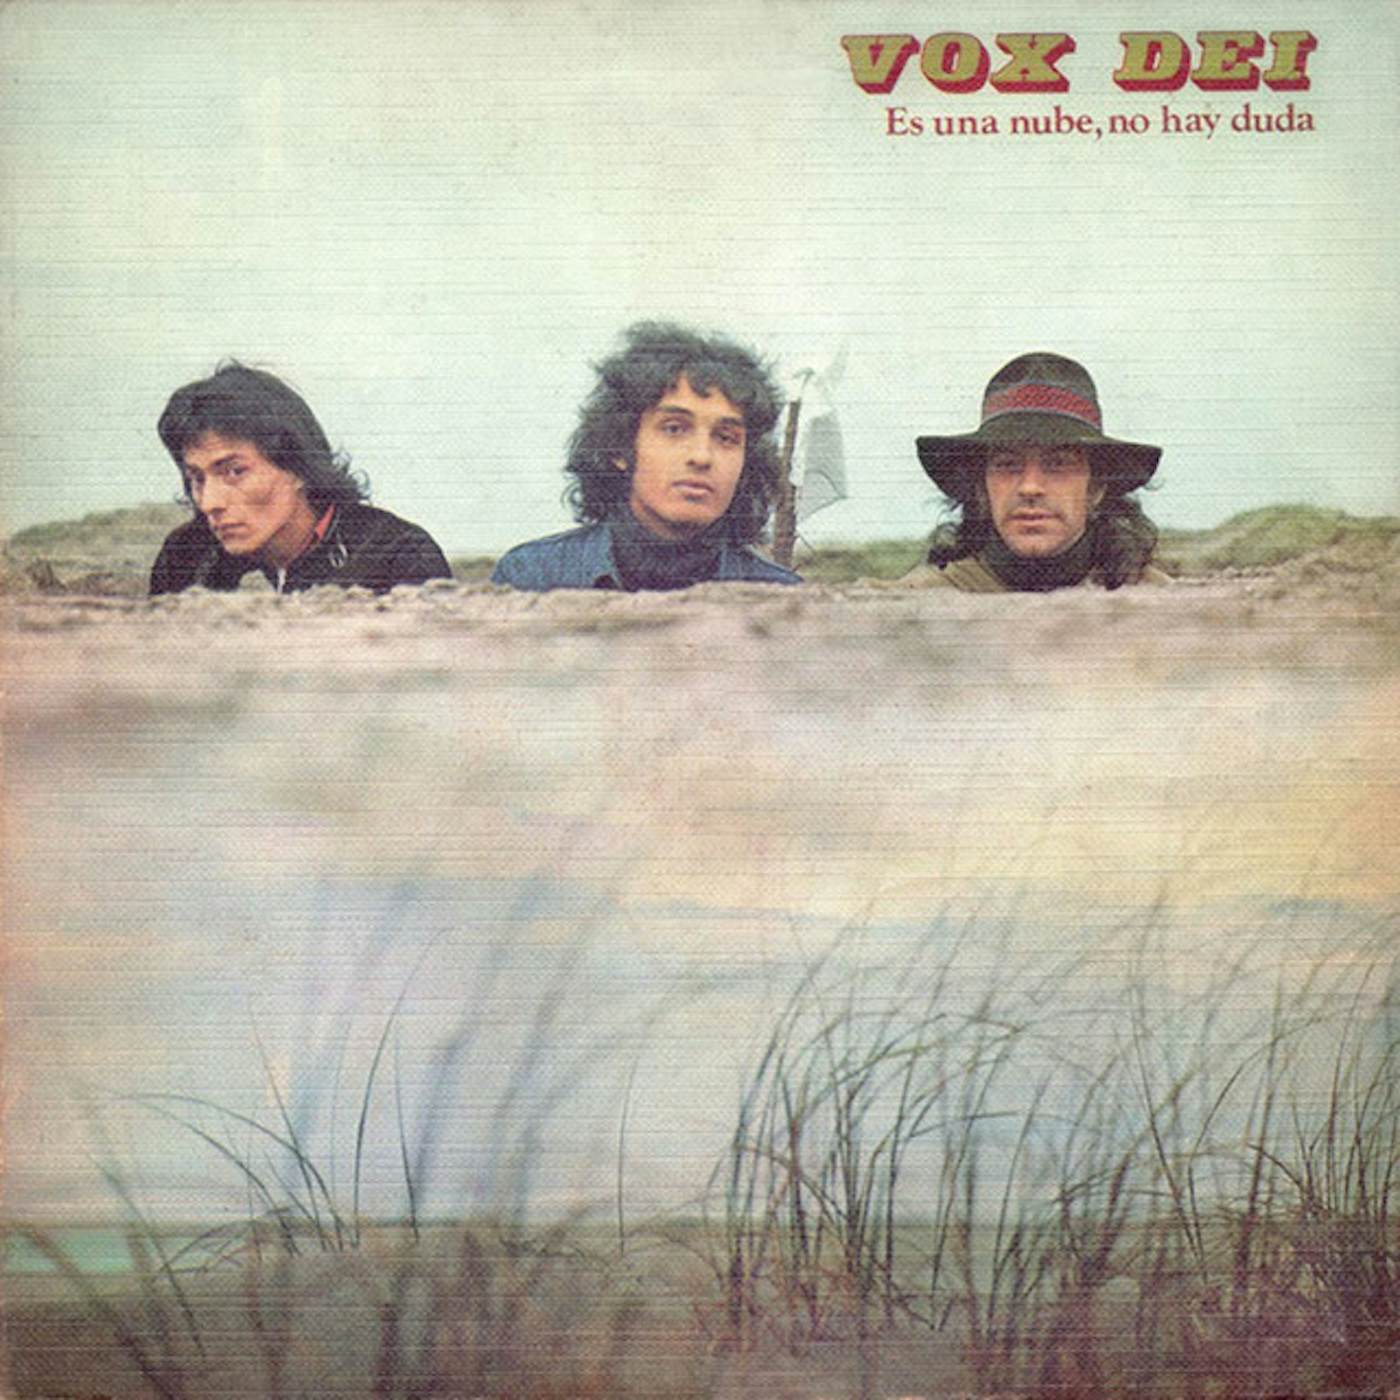 Vox Dei ES UNA NUBE NO HAY NADA Vinyl Record